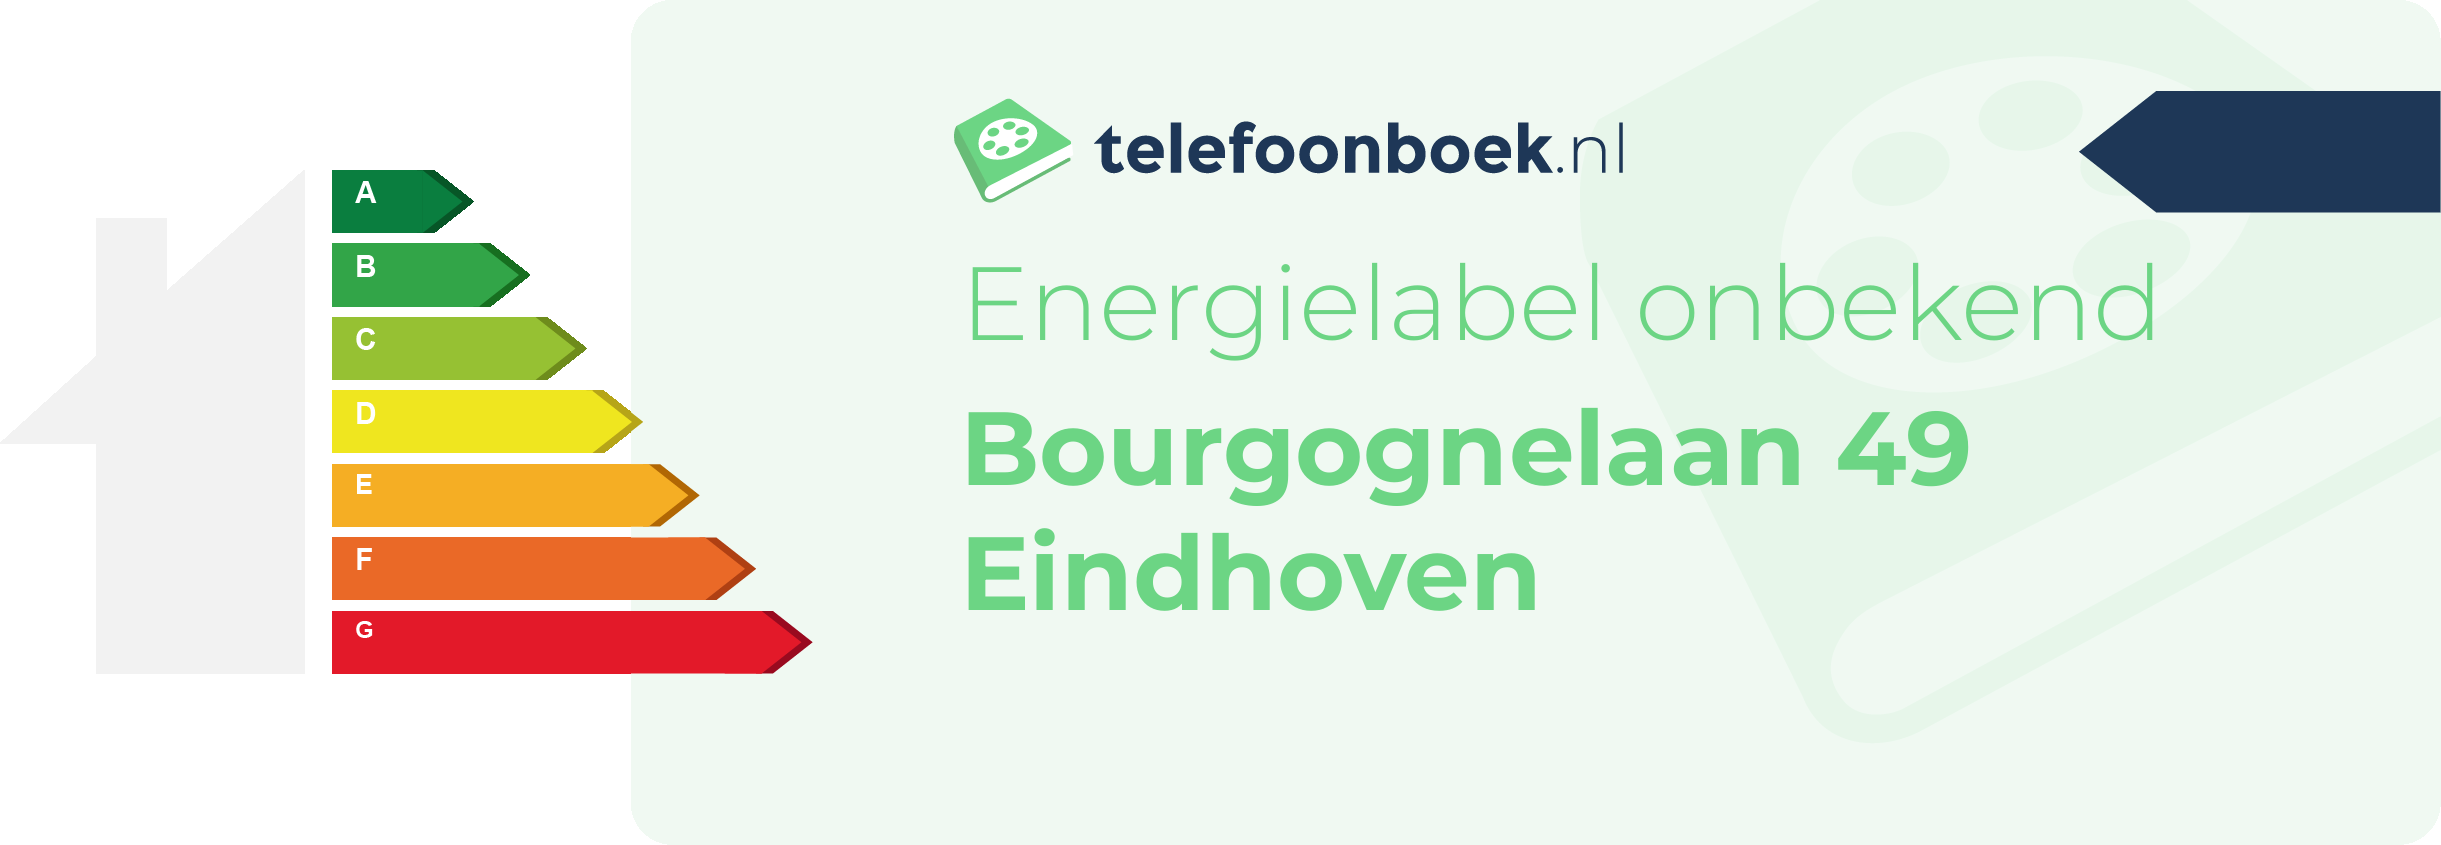 Energielabel Bourgognelaan 49 Eindhoven